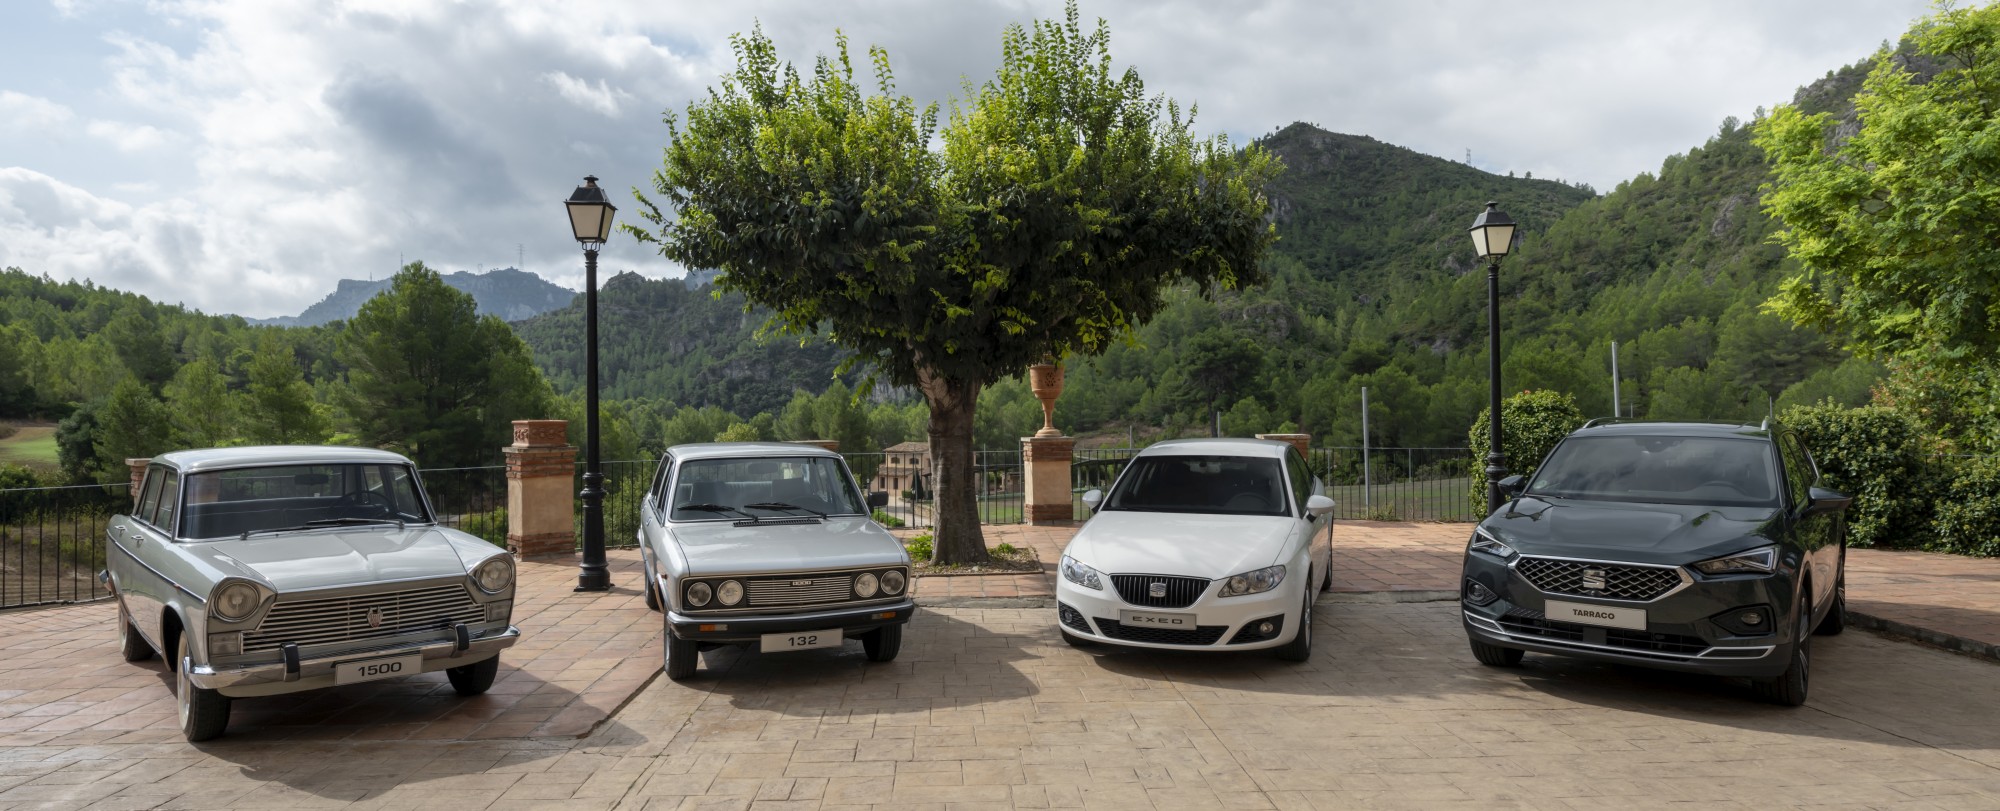 Vom SEAT 1500 zum Fullsize-SUV Tarraco: Die Geschichte der SEAT Flagschiffe